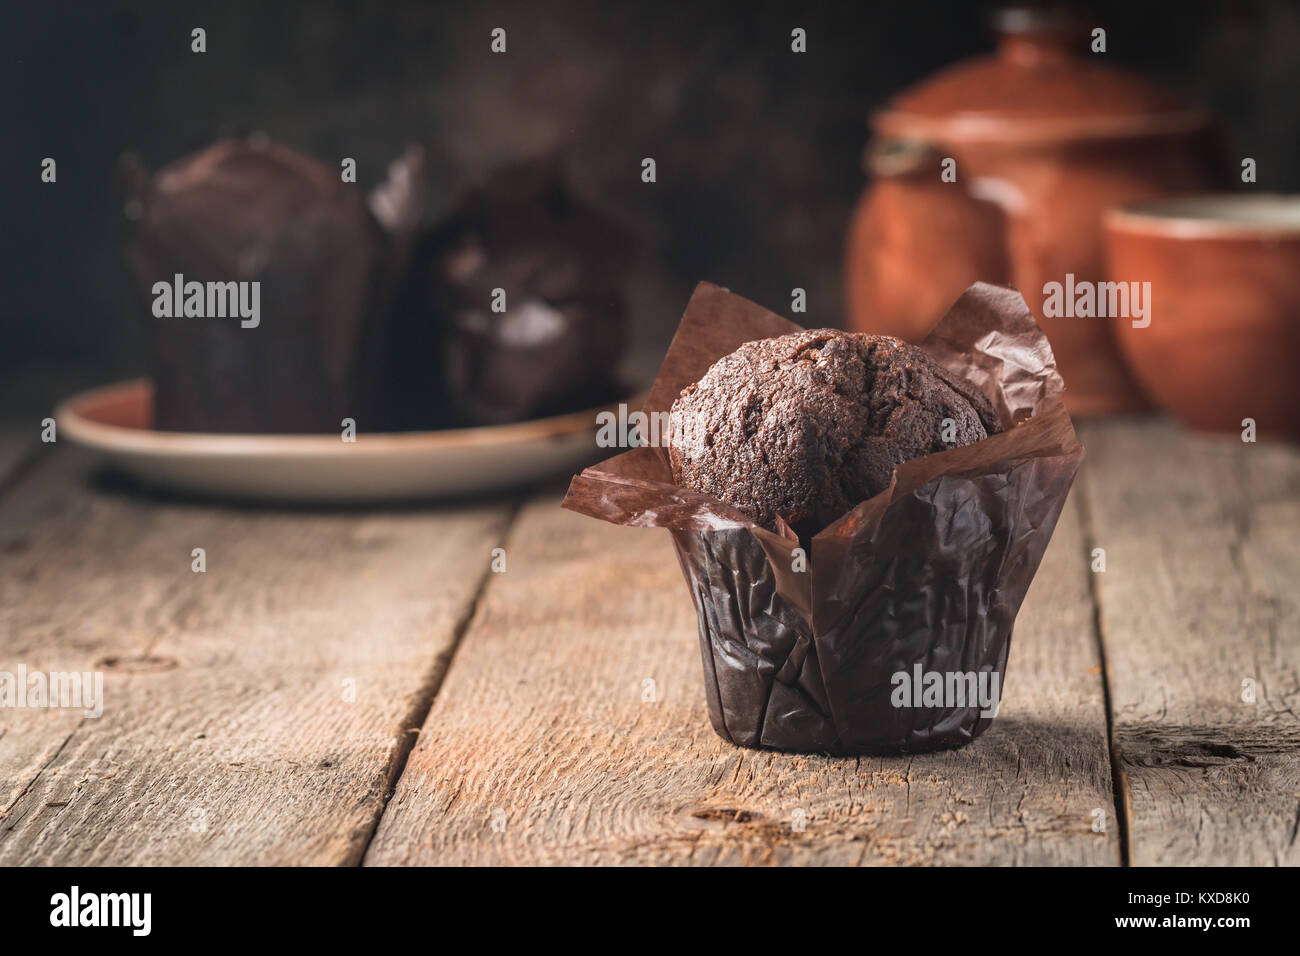 Hausgemachte Schokolade muffin Stockfoto